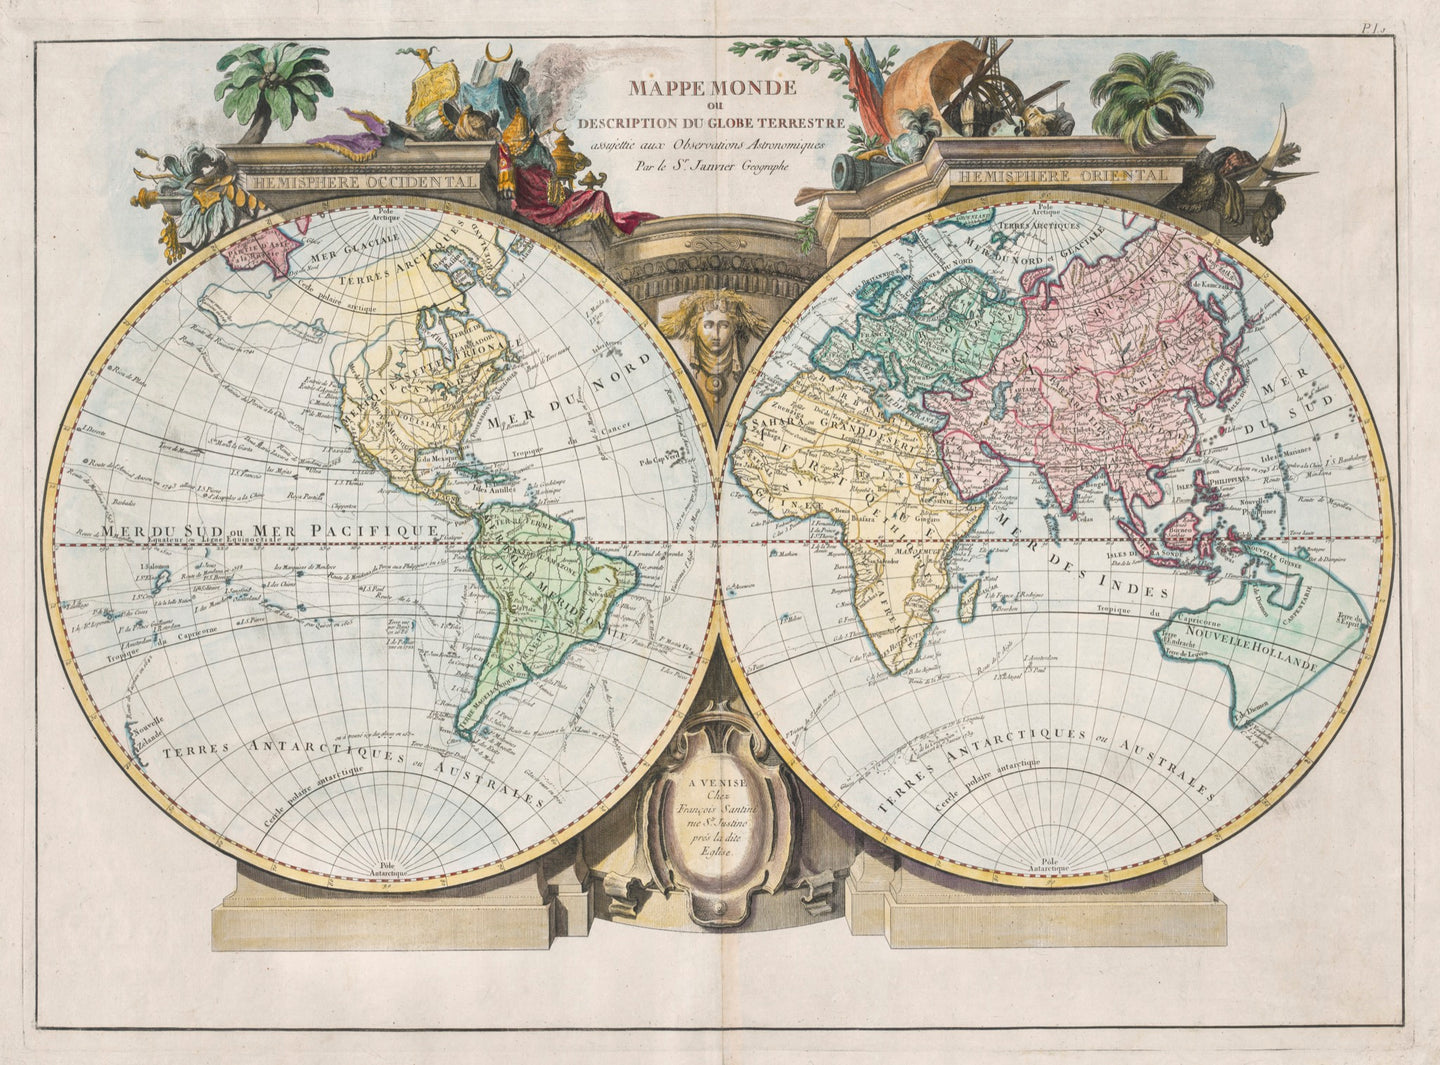 Mappe Monde ou Description du Globe Terrestre